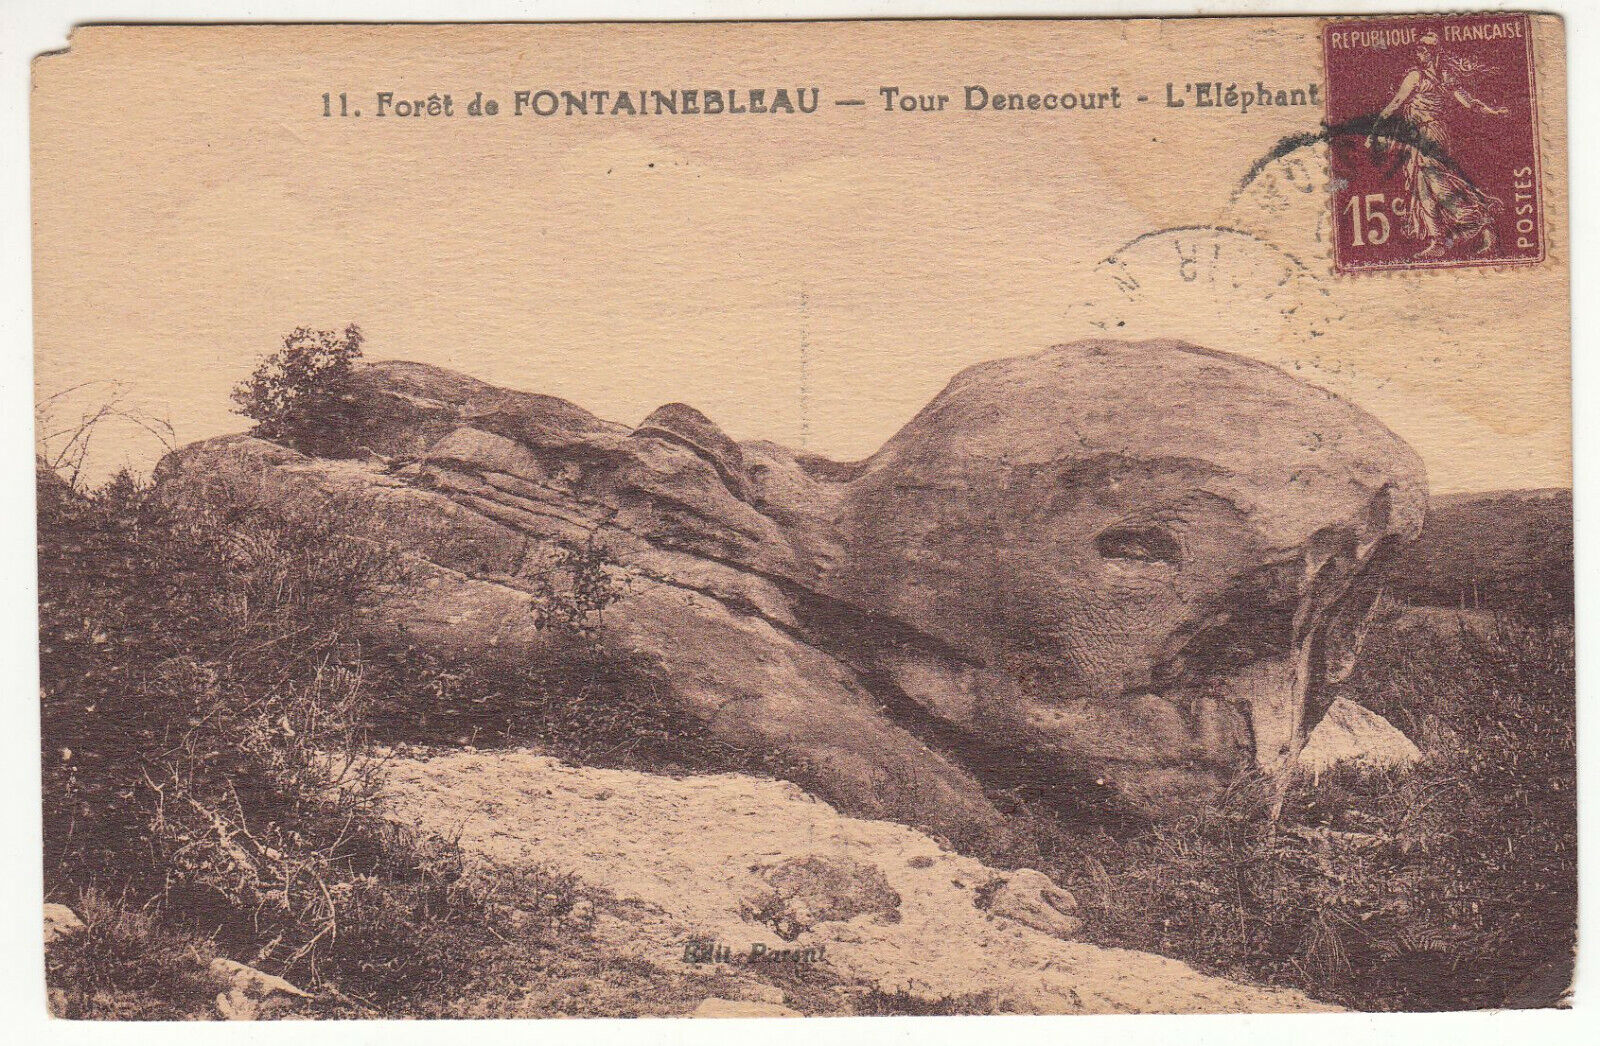 CARTE POSTALE FORET DE FONTAINEBLEAU TOUR DENECOURT L ELEPHANT 123904483127